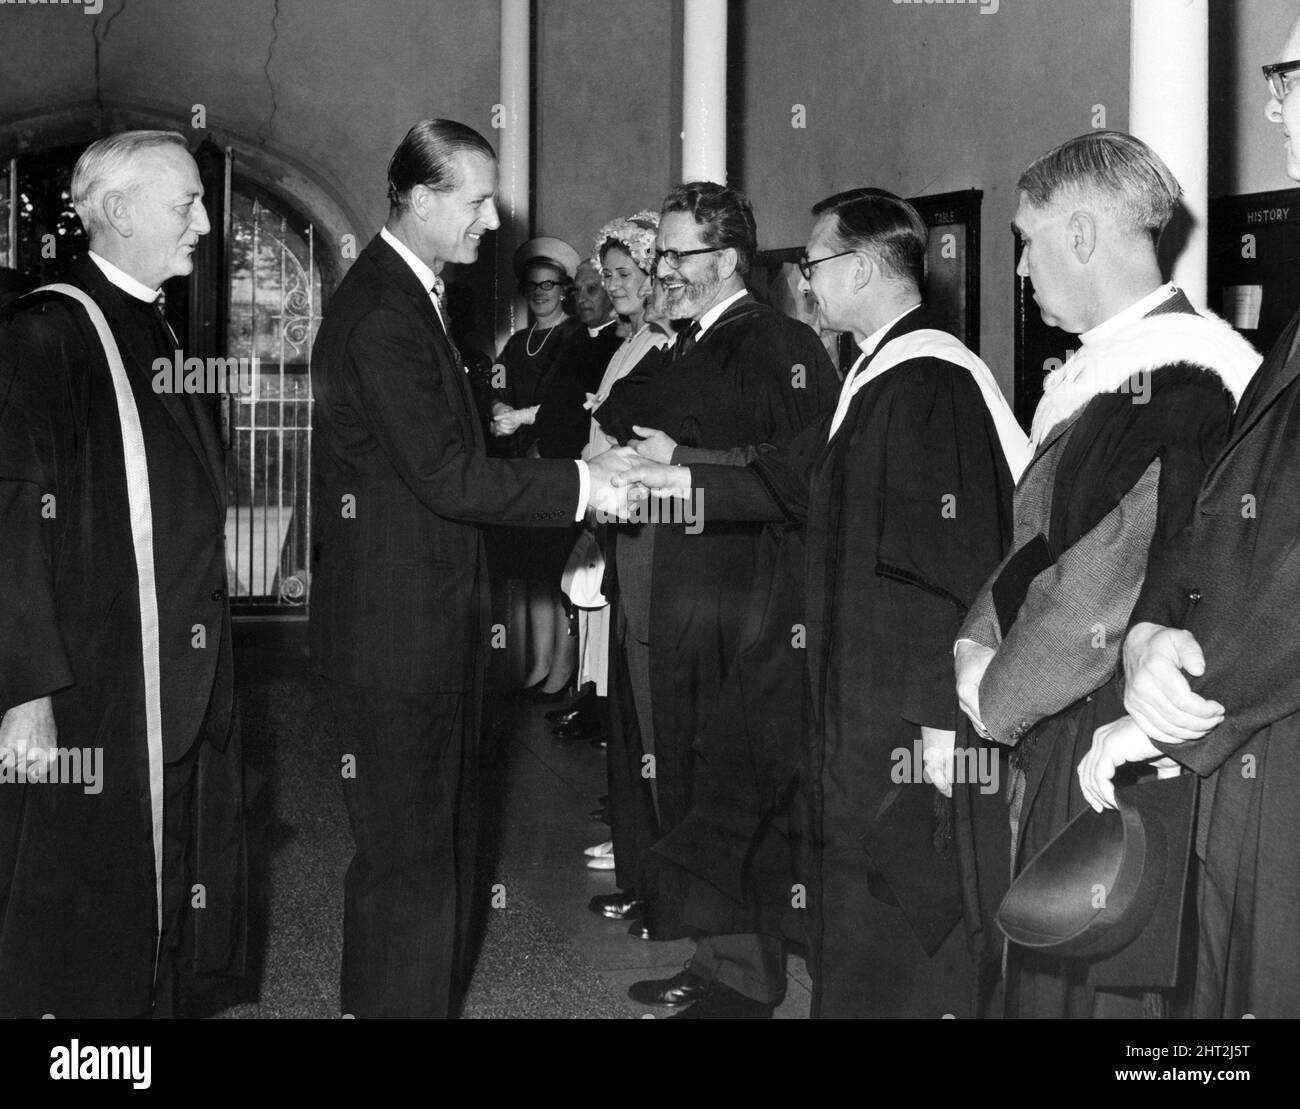 Le prince Philip, duc d'Édimbourg, discutant avec le pasteur Thomas Wood, lors des présentations du personnel du collège St David's College, Lampeter, pays de Galles. 7th juillet 1966. Banque D'Images